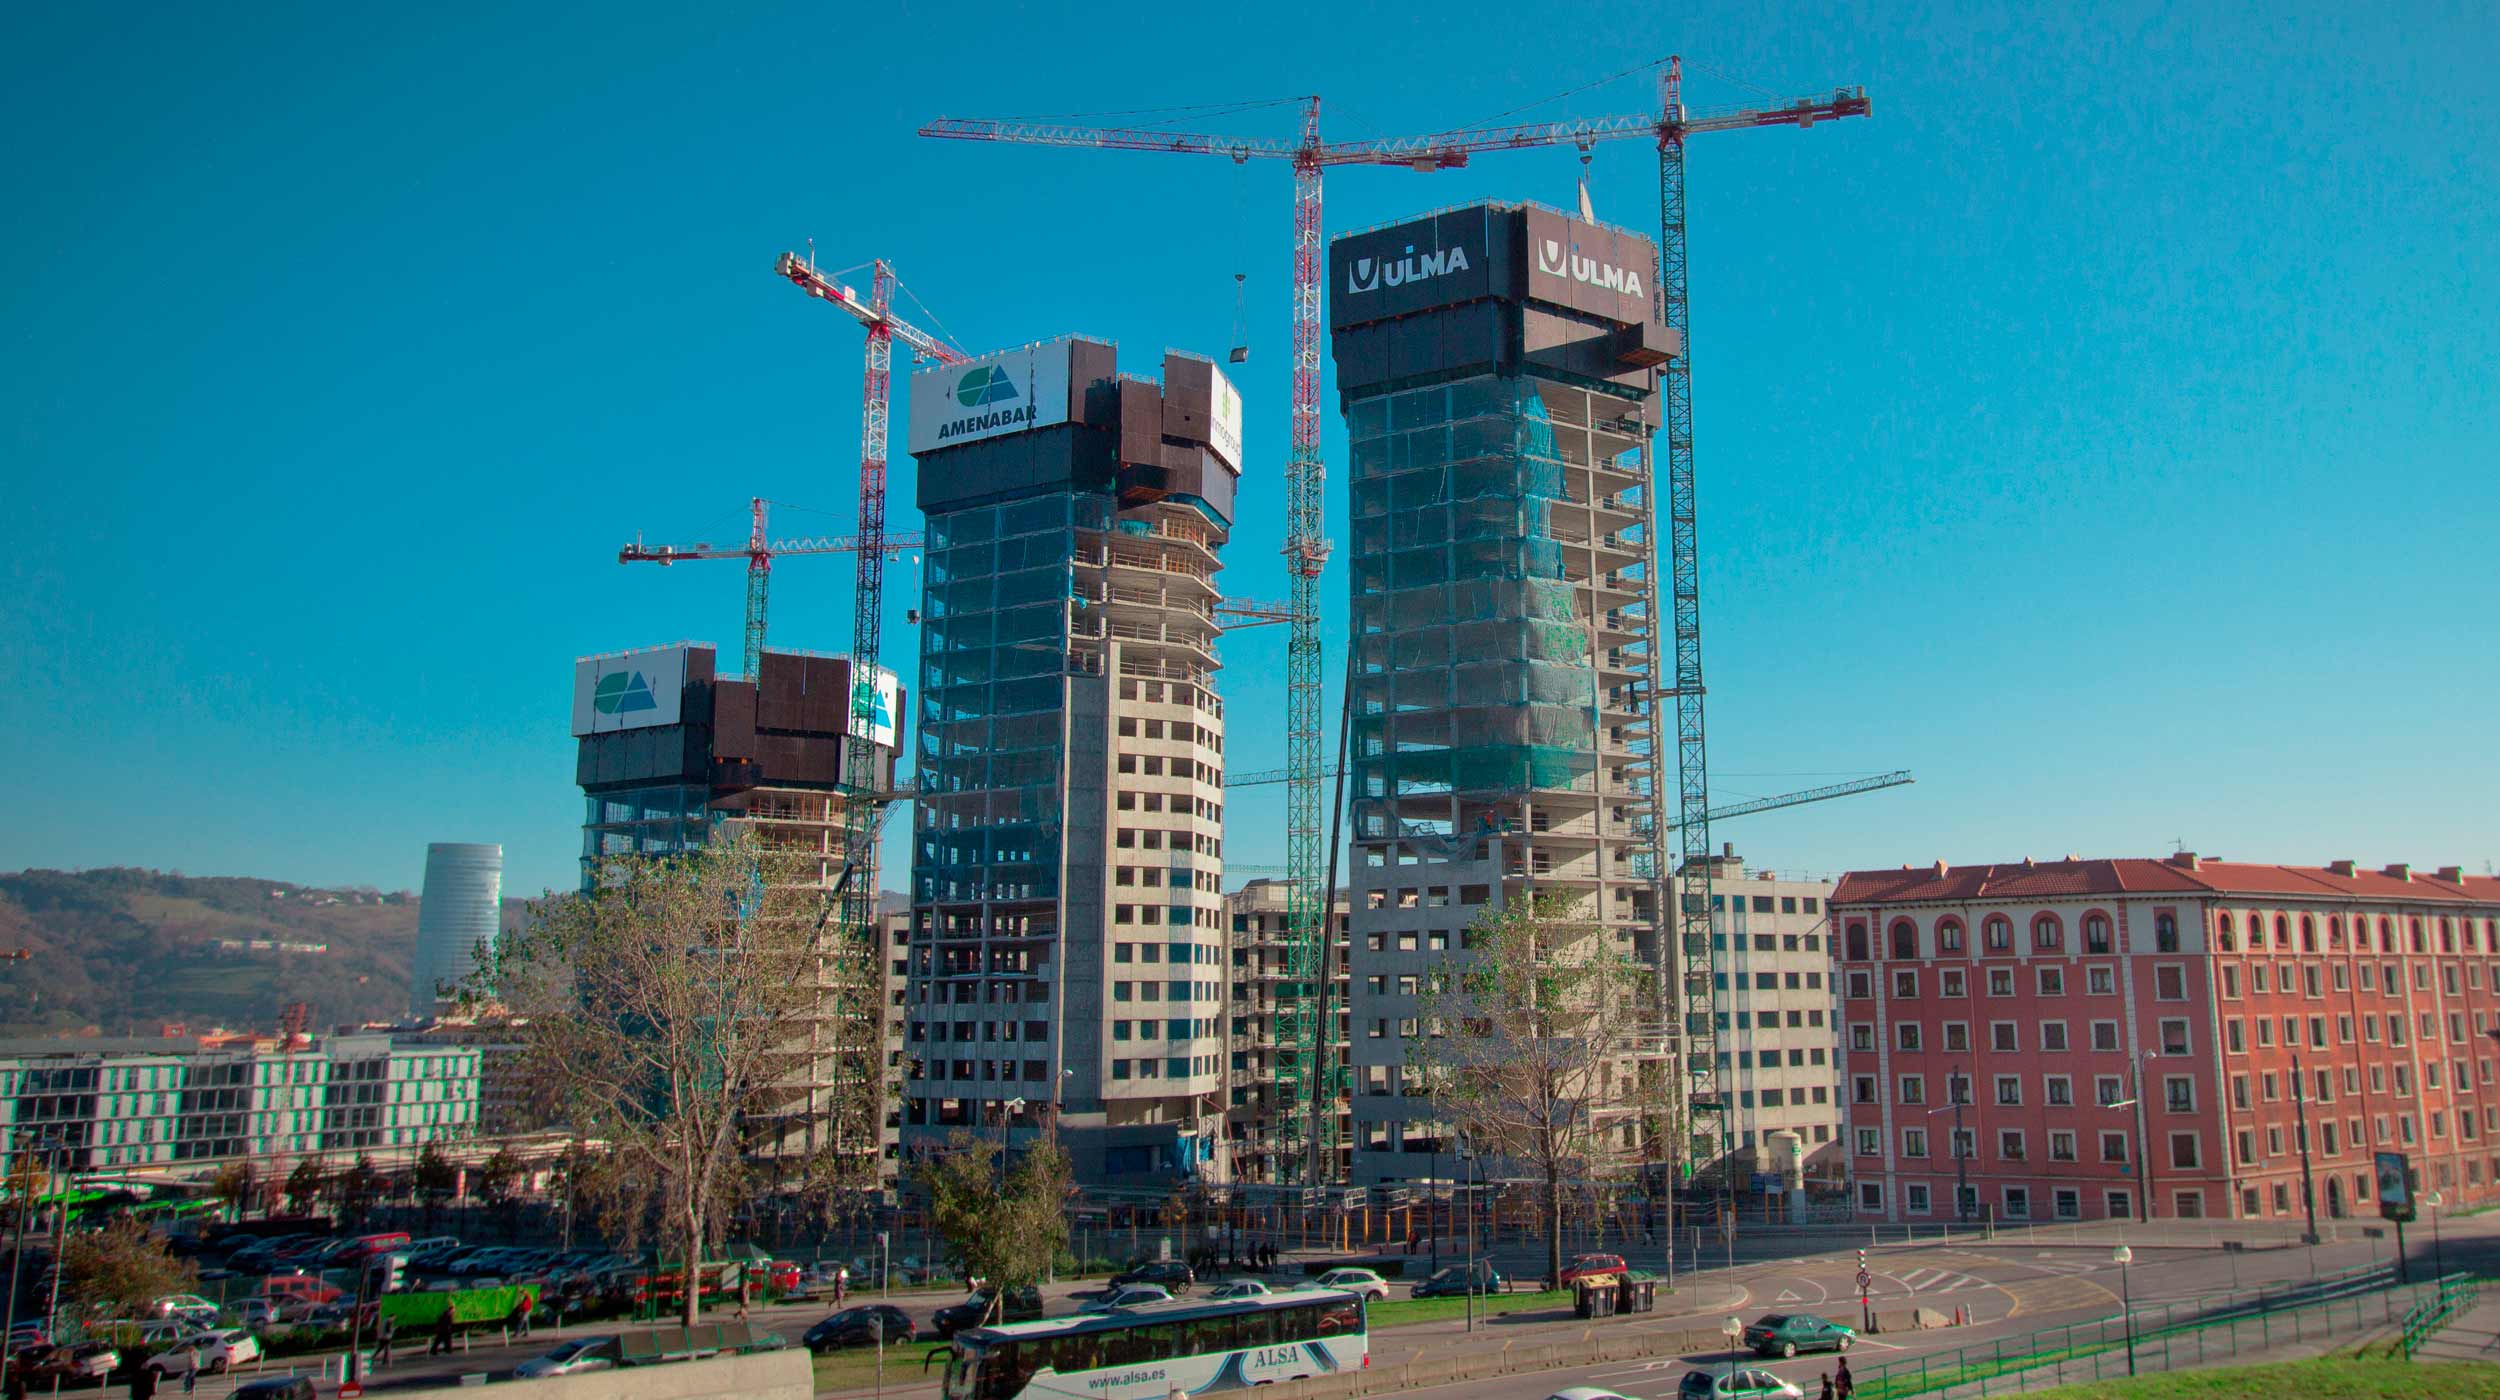 Ces dernières années, Bilbao a connu l’une des plus impressionnantes revitalisations urbaines d’Europe, et ULMA a joué un rôle clé dans ce processus.